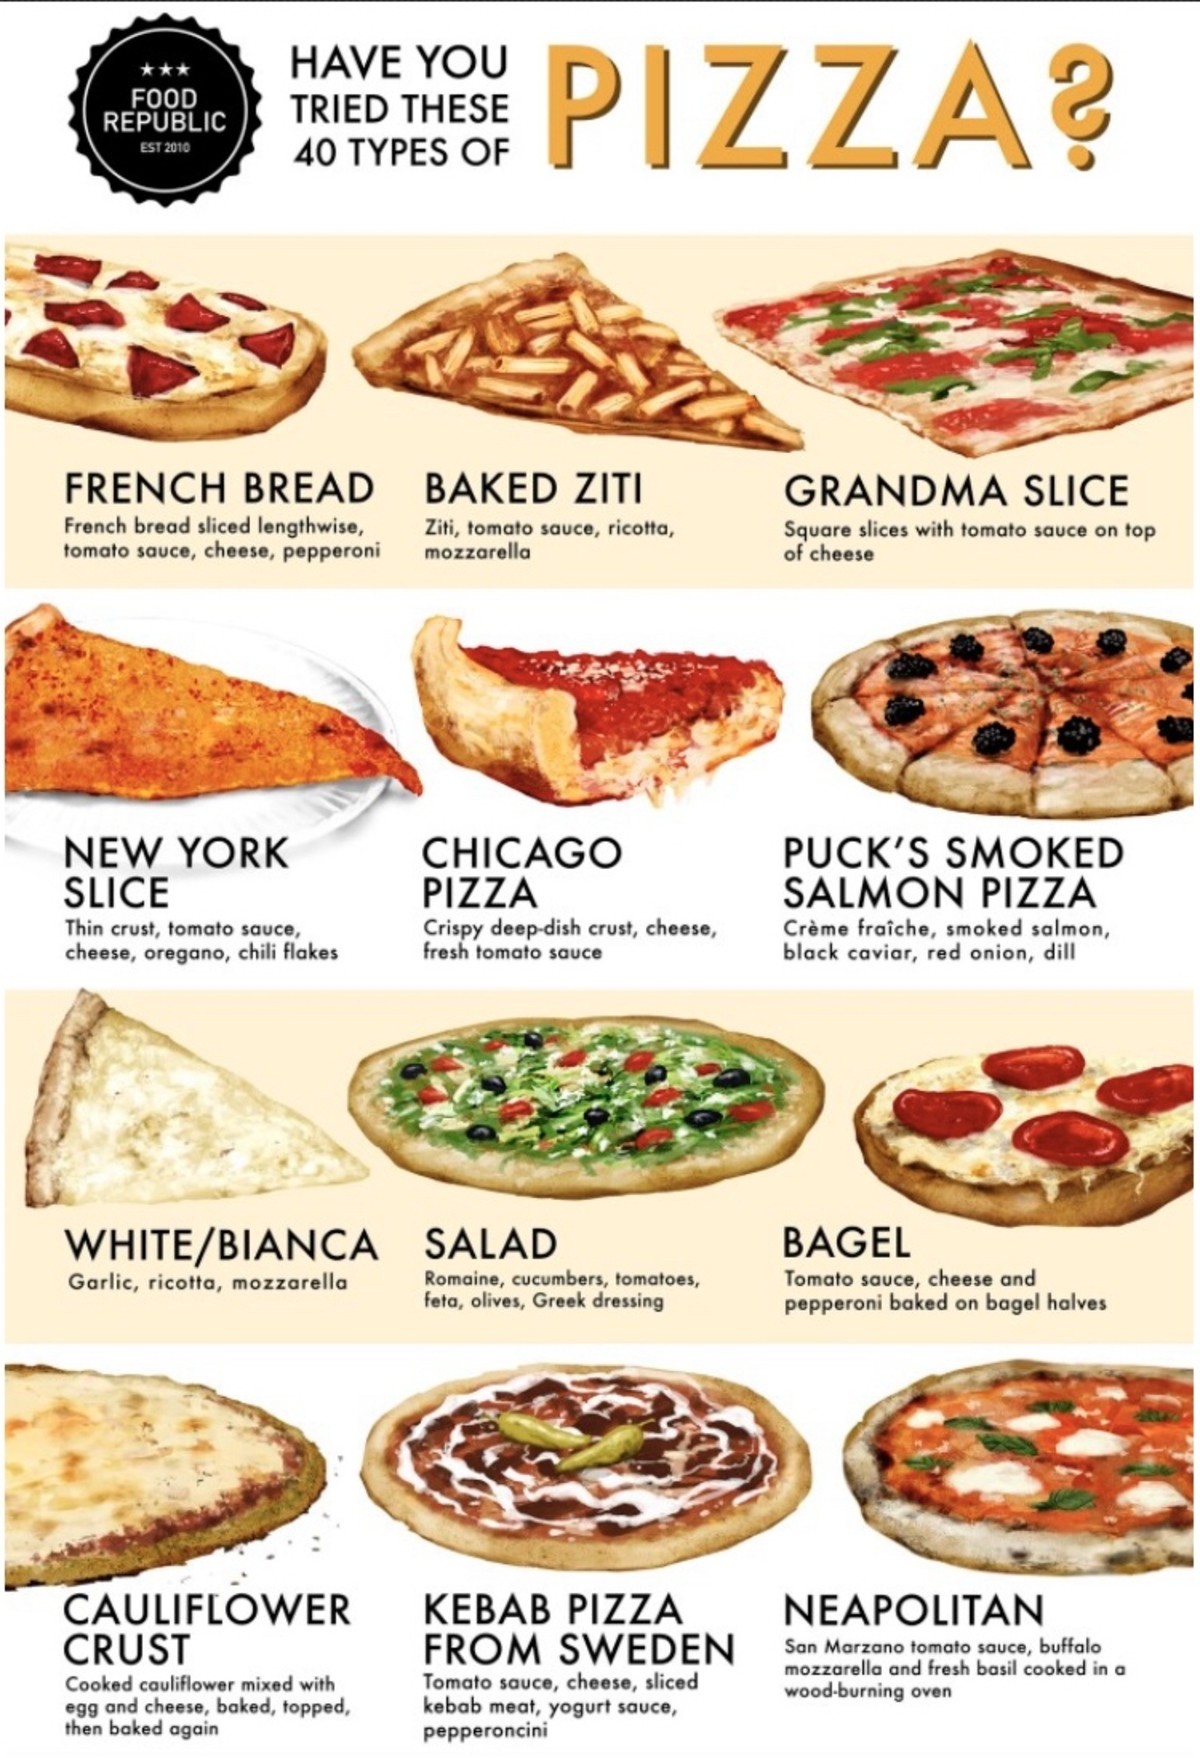 рецепт пиццы 4 сыра на английском языке фото 71